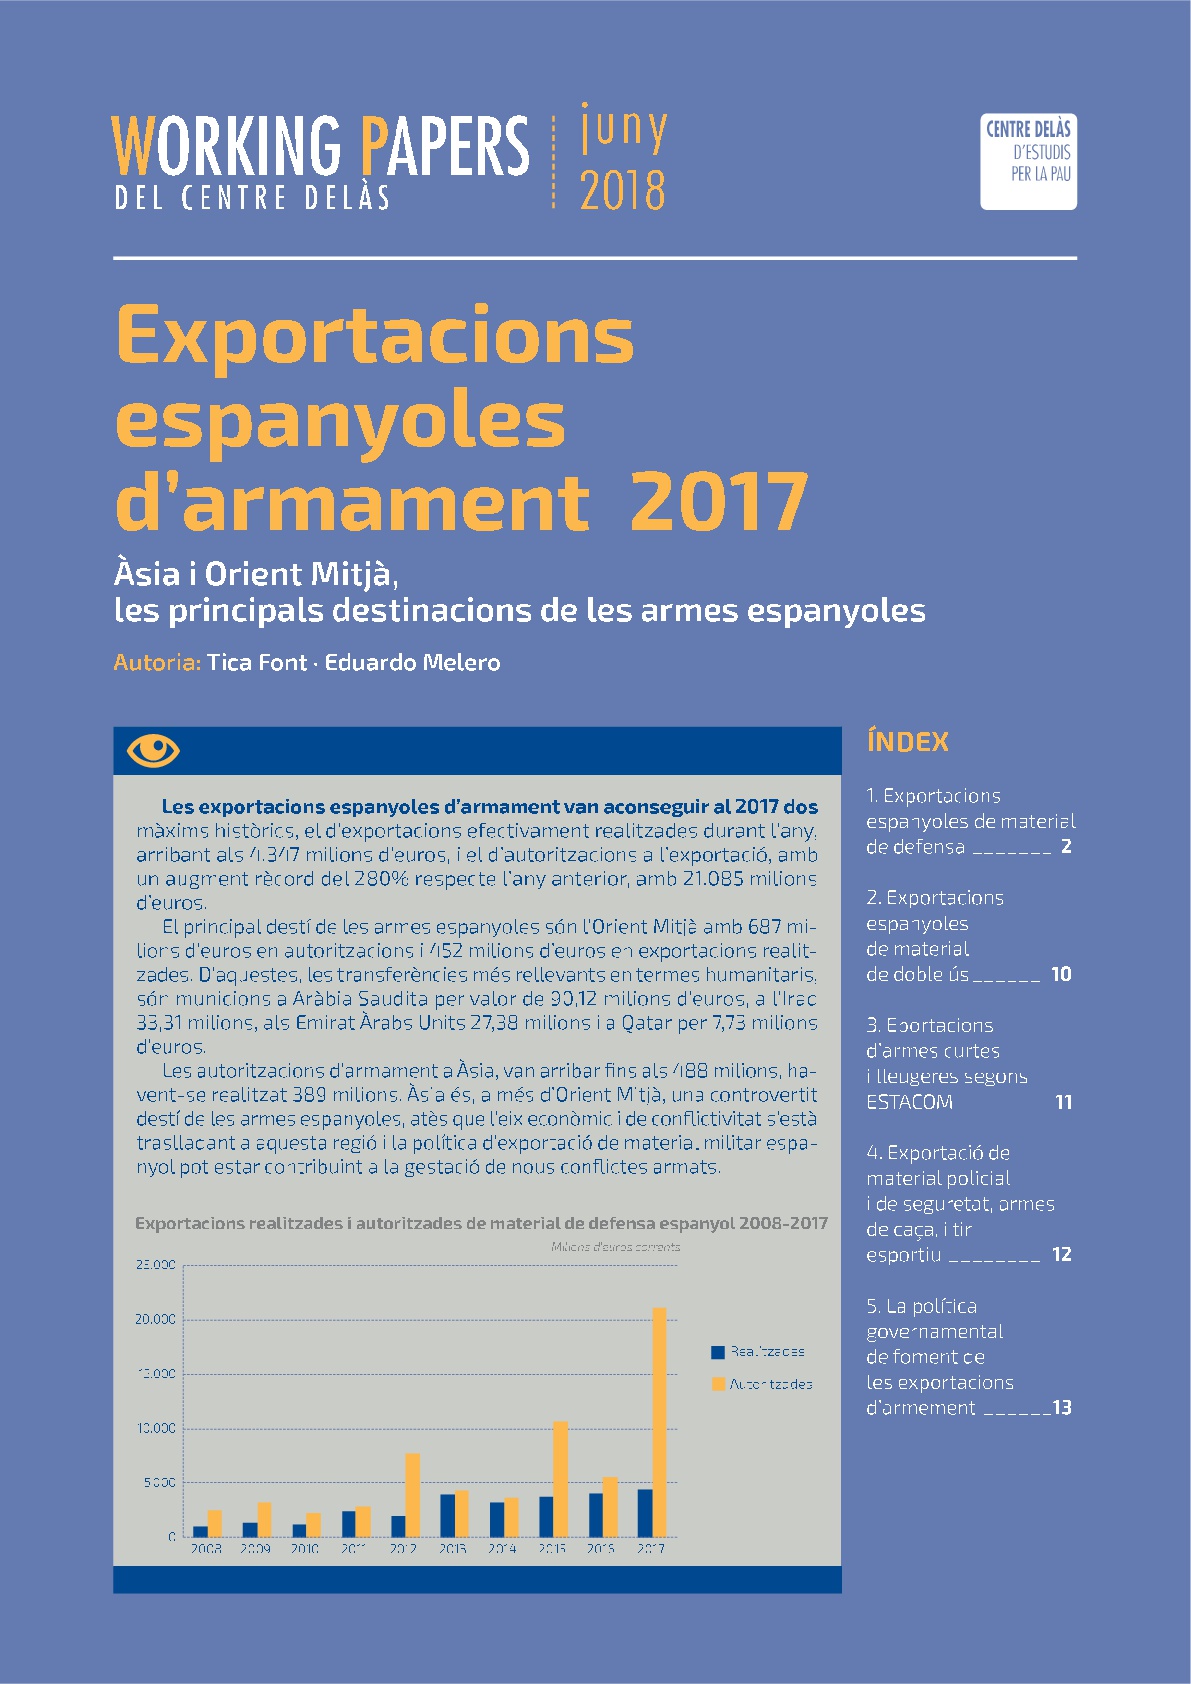 Working Paper: Exportacions espanyoles d’armament 2017